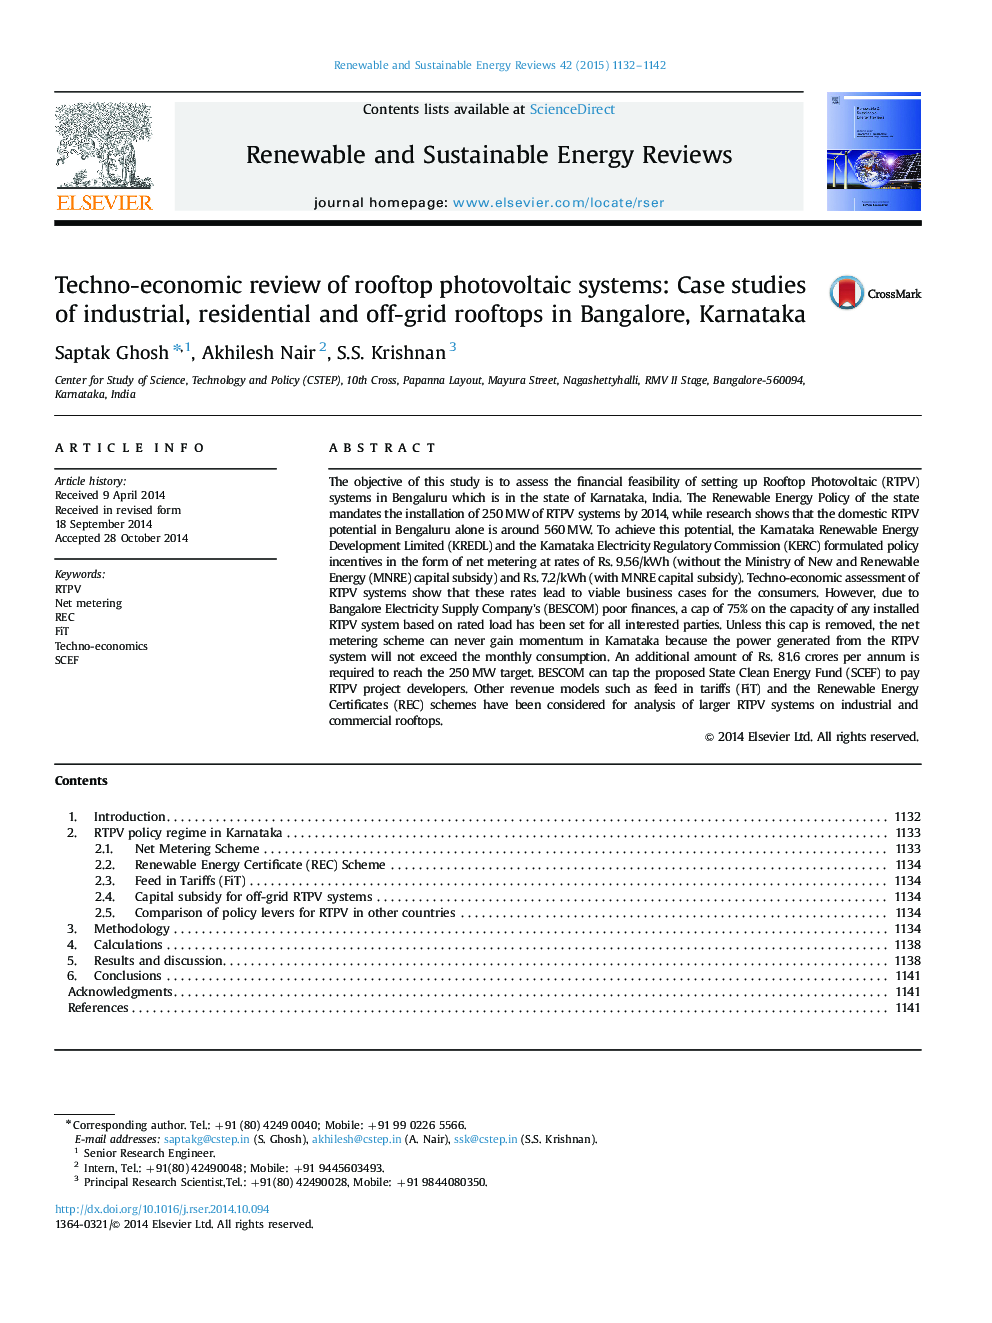 بررسی تکنولوژیکی سیستم های فتوولتائیک پشت بام: مطالعات موردی پشت بام های صنعتی، مسکونی و بیرونی در بنگلور، کارناتاکا 